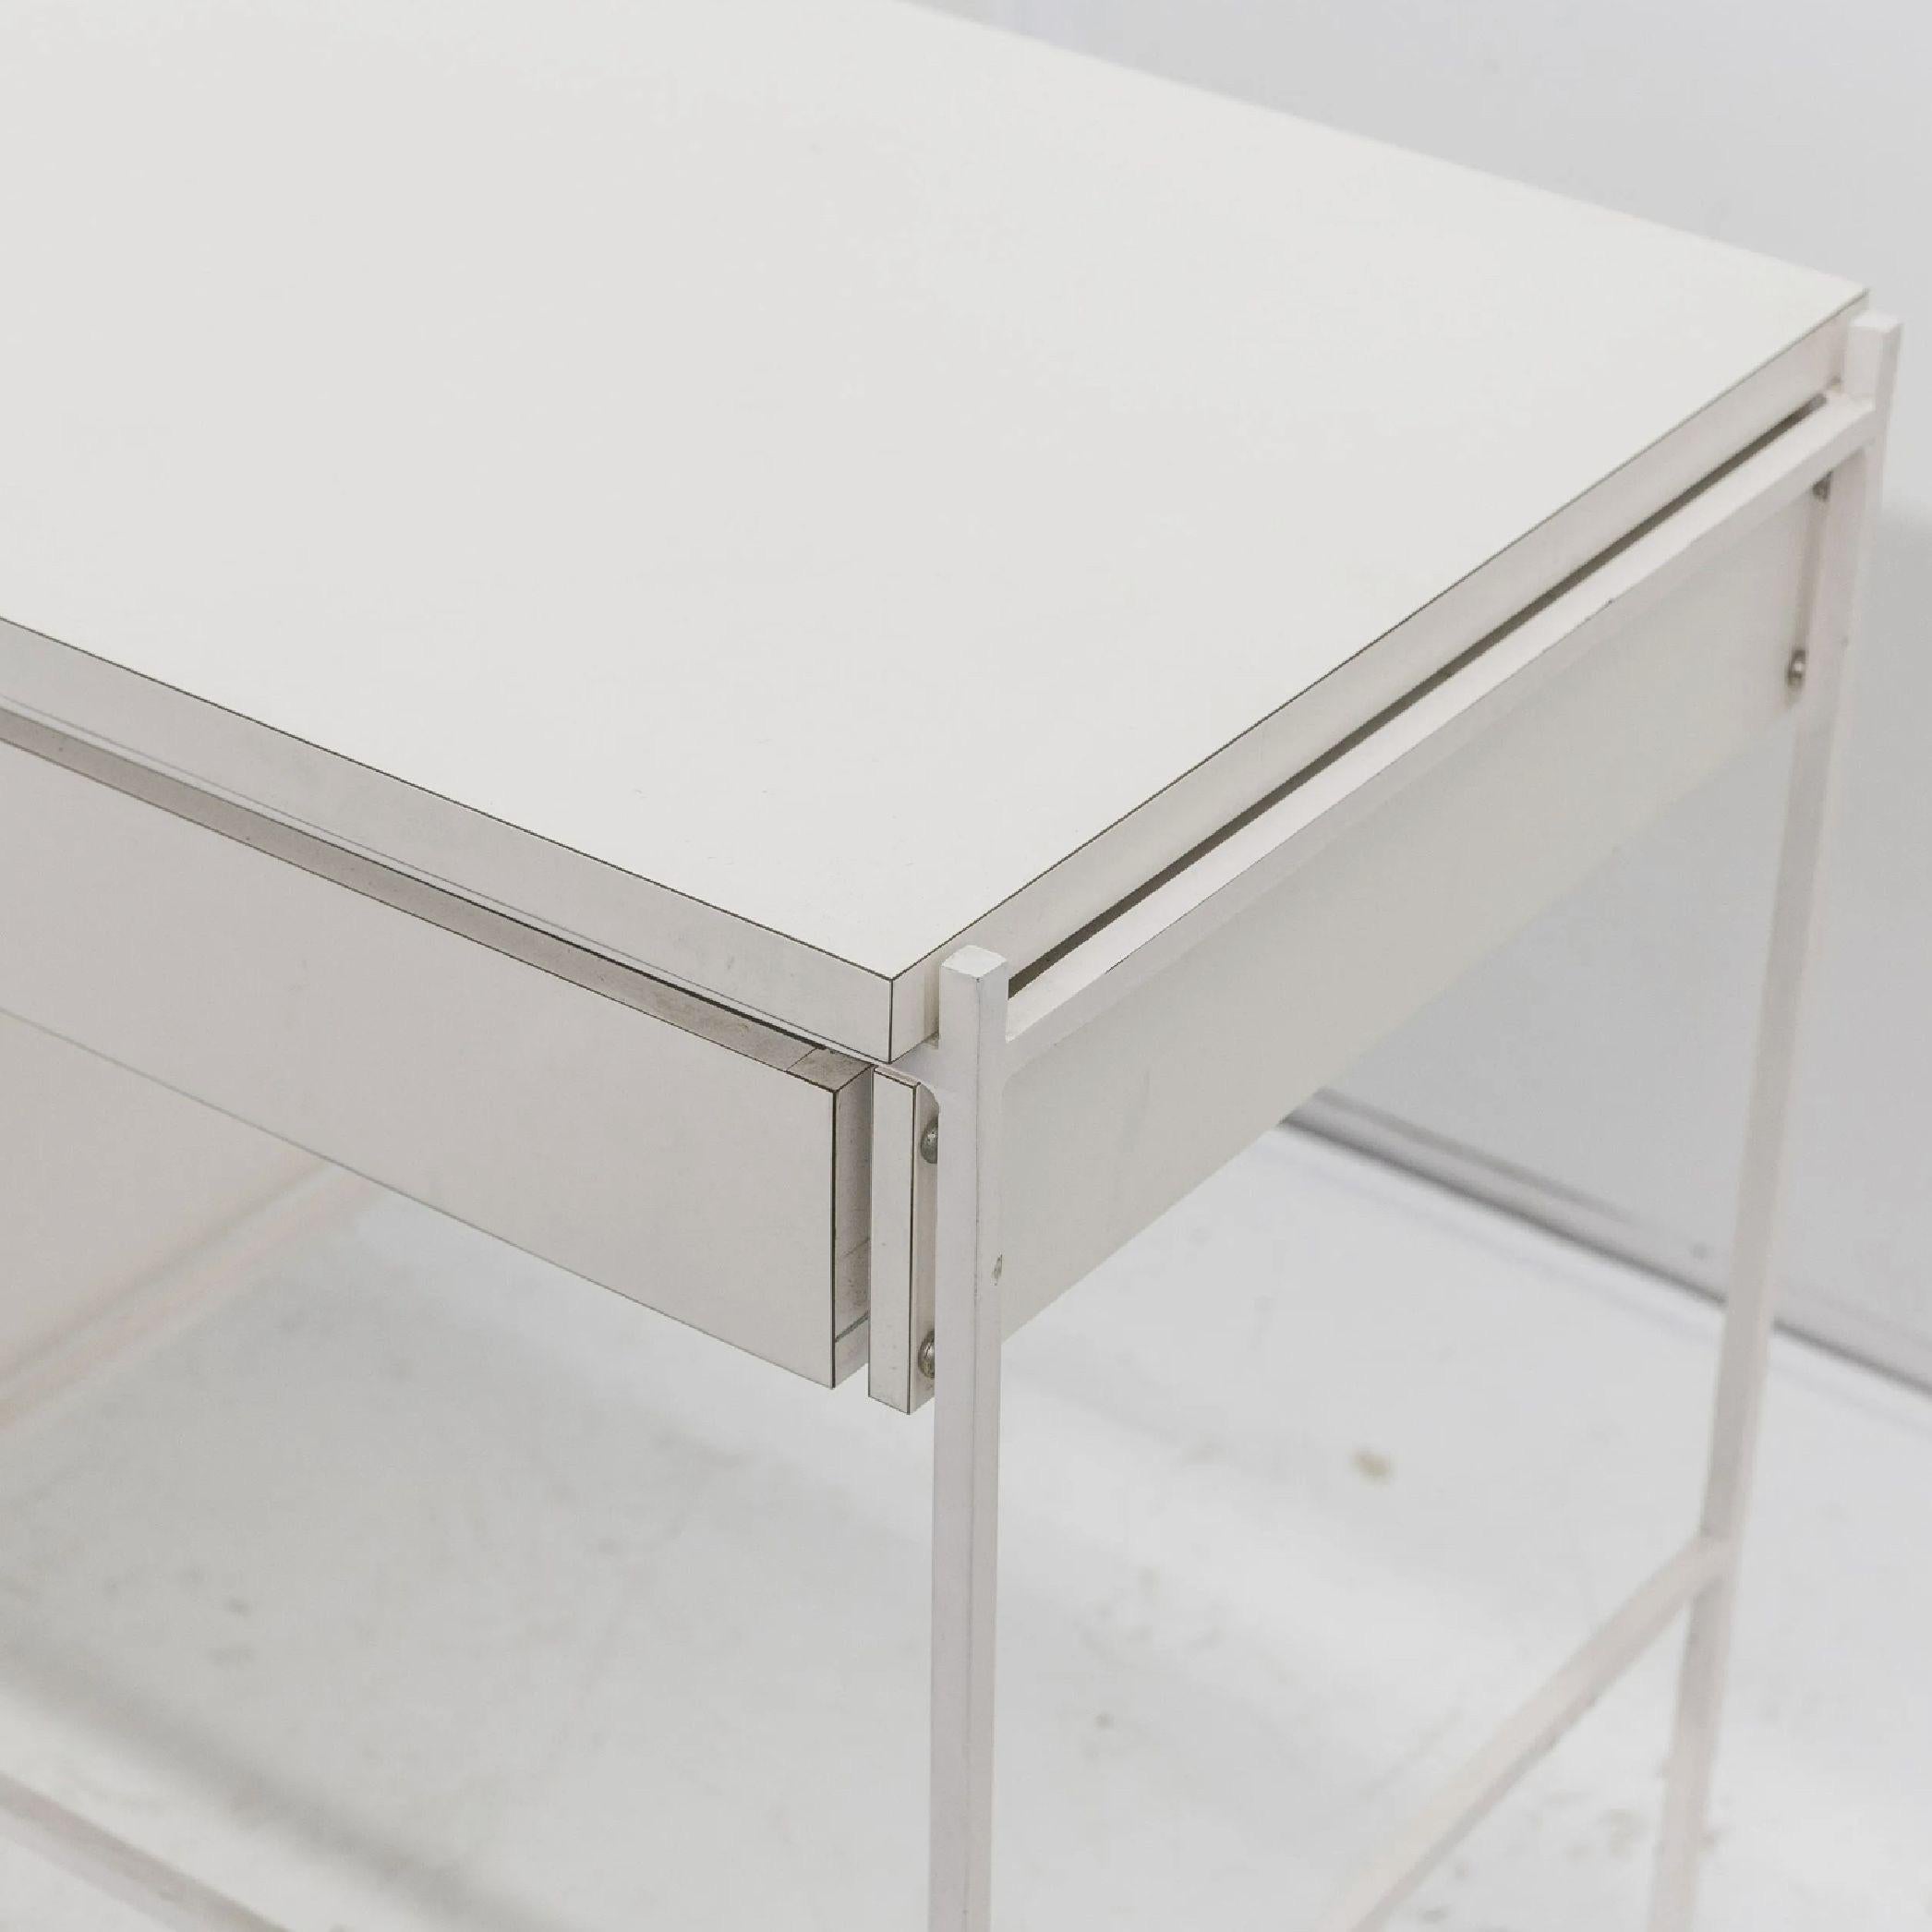 Stainless Steel Ladislav Rado White Enameled Steel Modern Desk, Vanity, 1955, Knoll and Drake For Sale